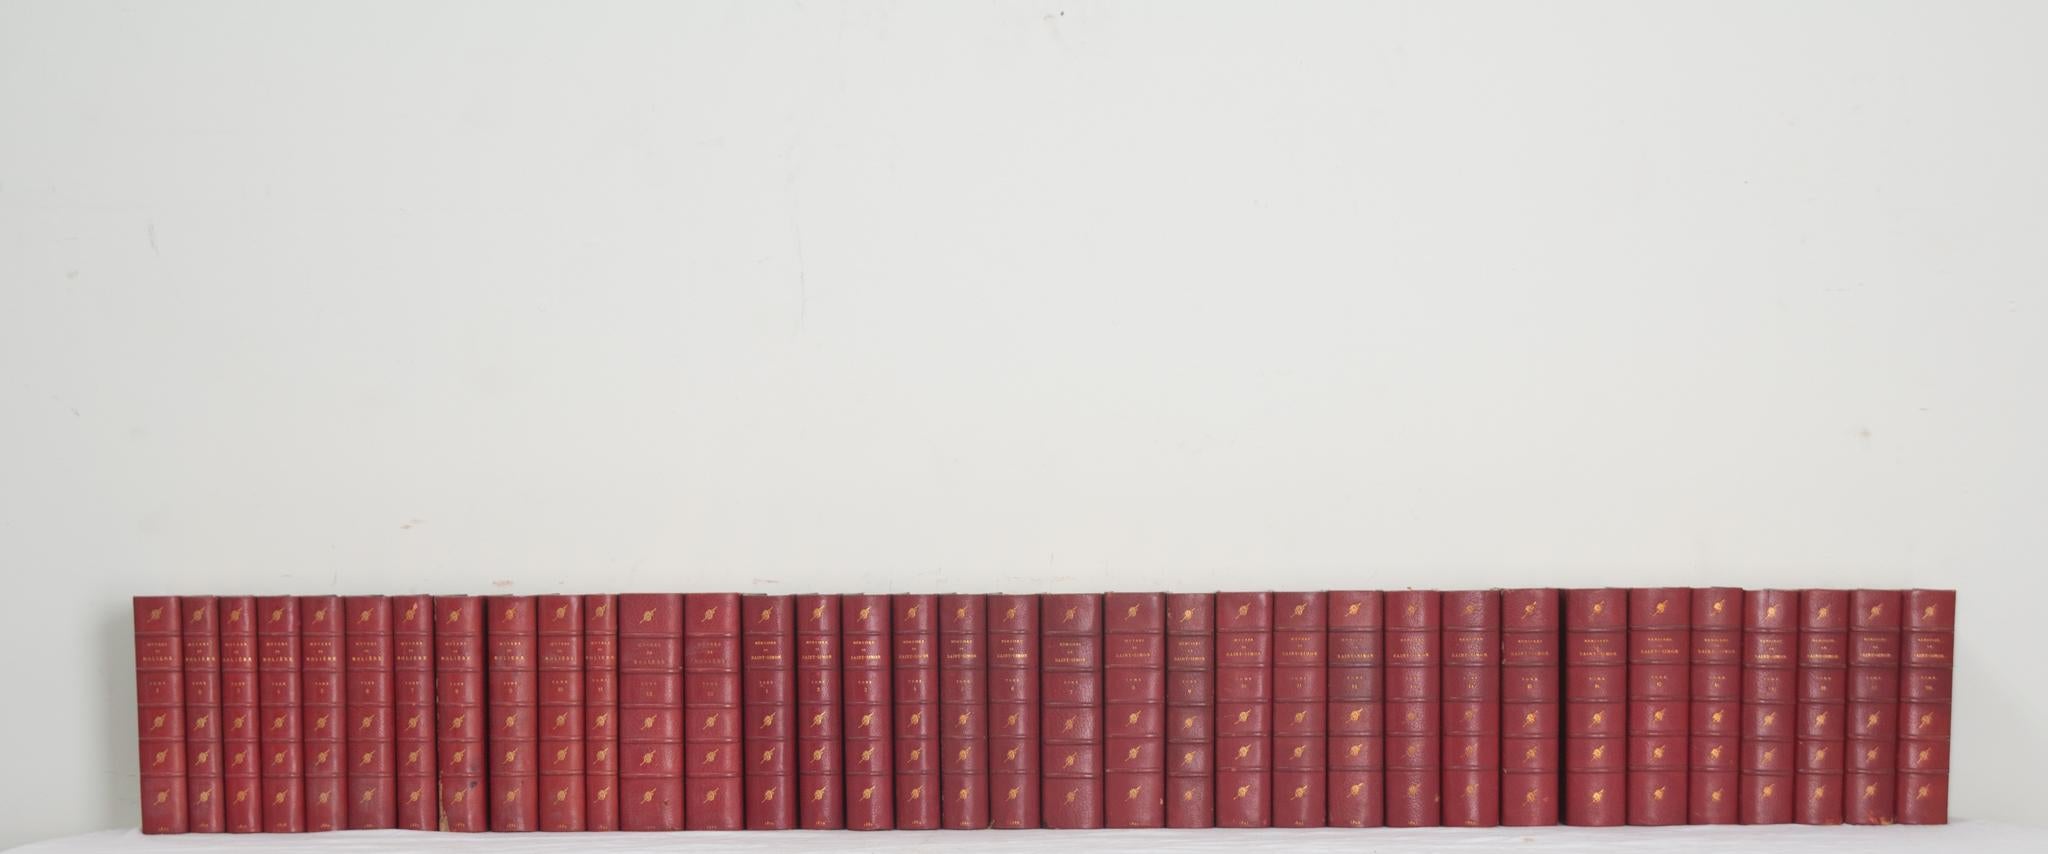 Une collection de vingt-deux volumes des œuvres de Molière et de Saint-Simon. Cette série de livres est reliée en cuir avec des lettres dorées indiquant l'auteur et le volume correspondant. Rédigés entre 1873 et 1910, Les Grands Écrivains de la